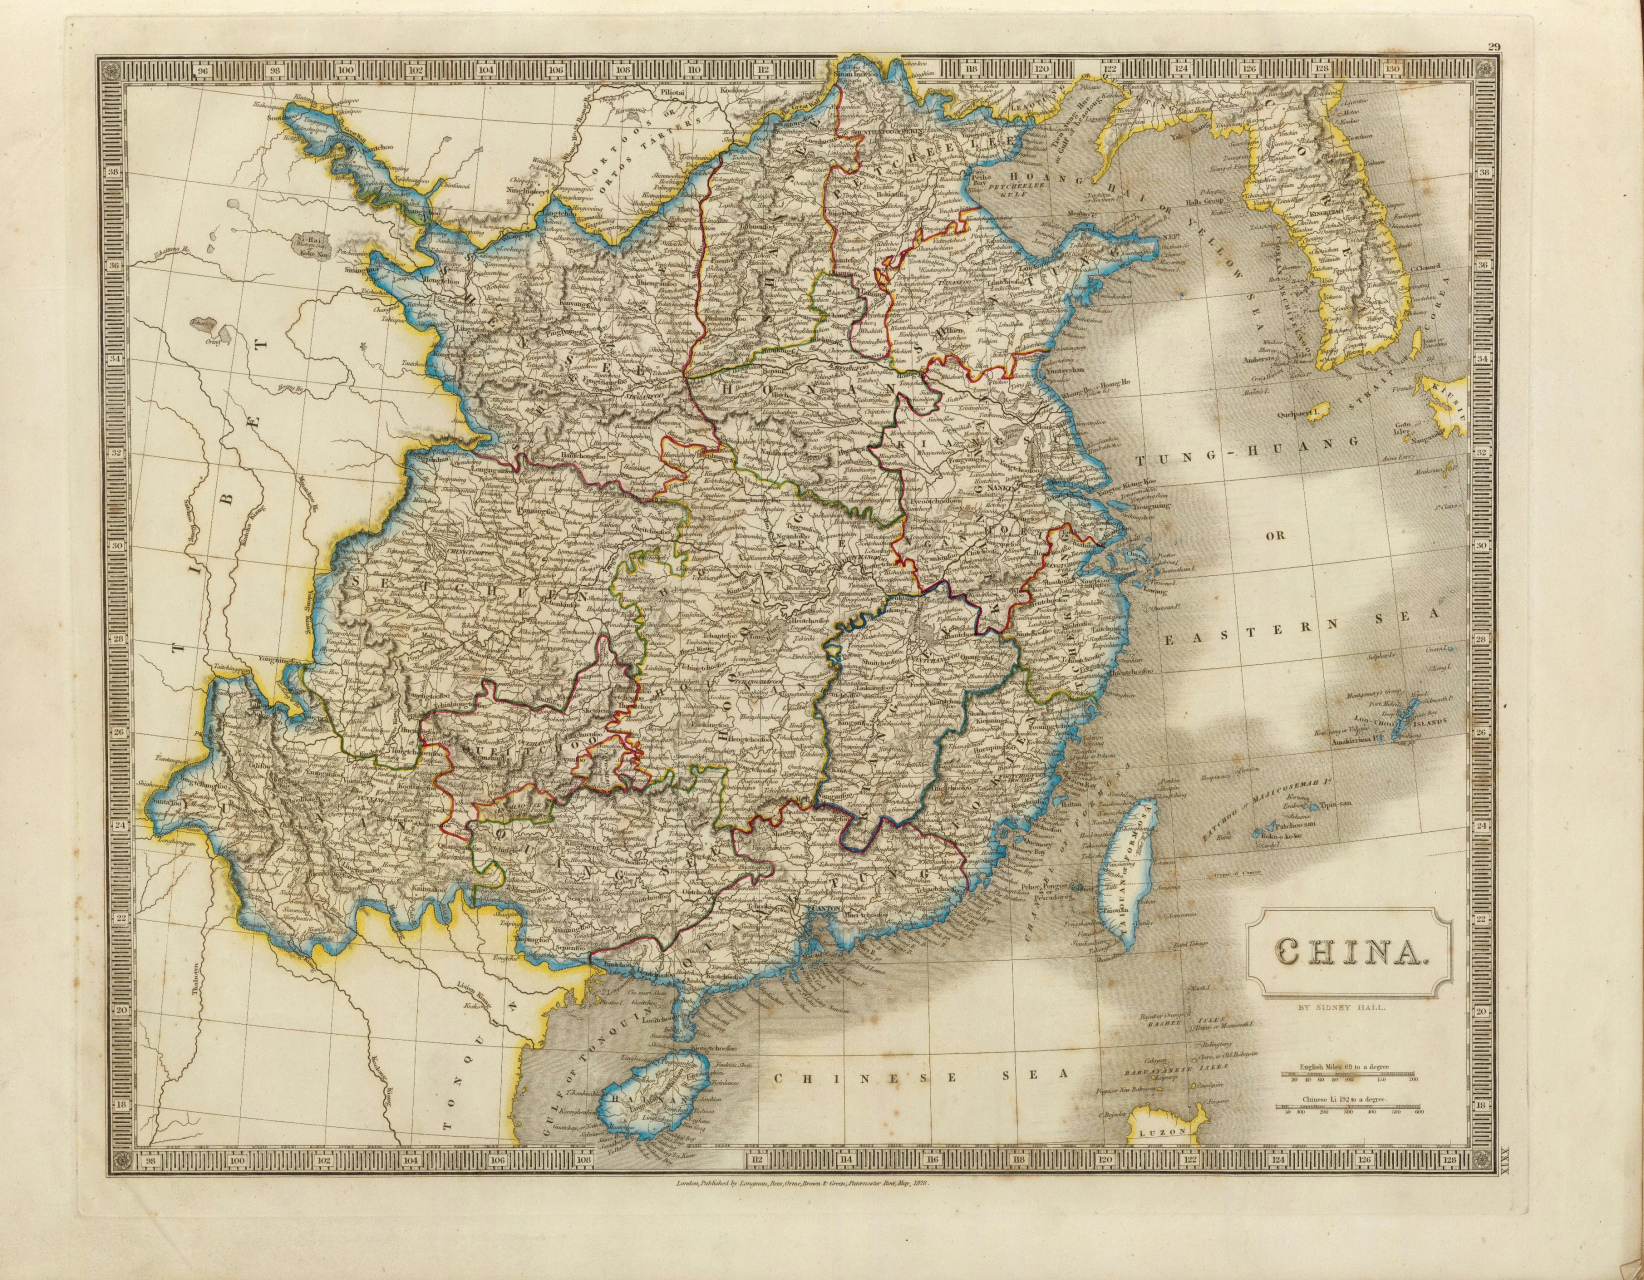 1828年英国编绘的中国本部地图 1828年(清道光八年)英国人编制的中国